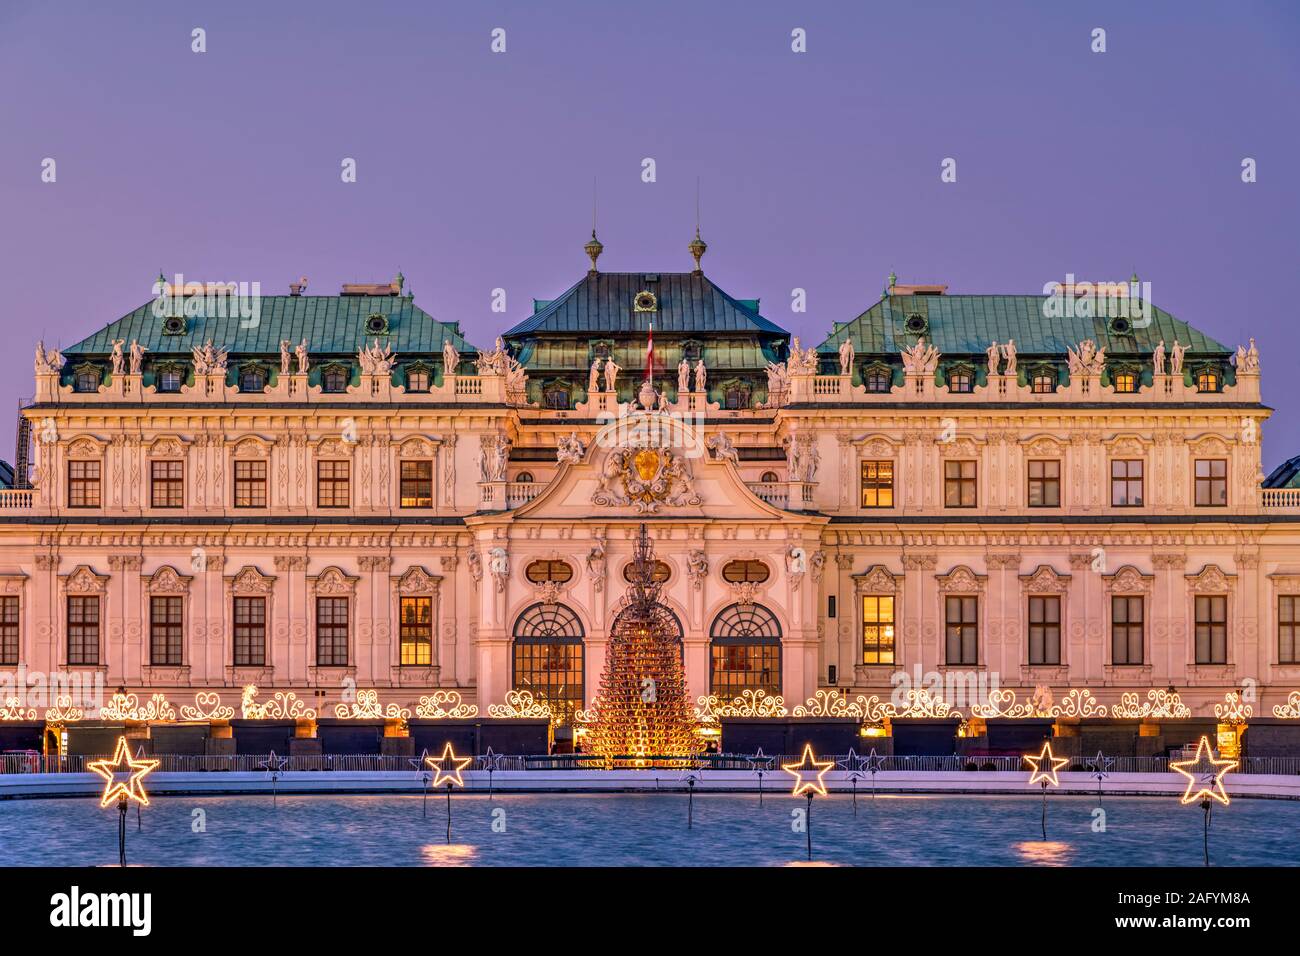 Las luces de Navidad, superior al Palacio de Belvedere, Viena, Austria Foto de stock